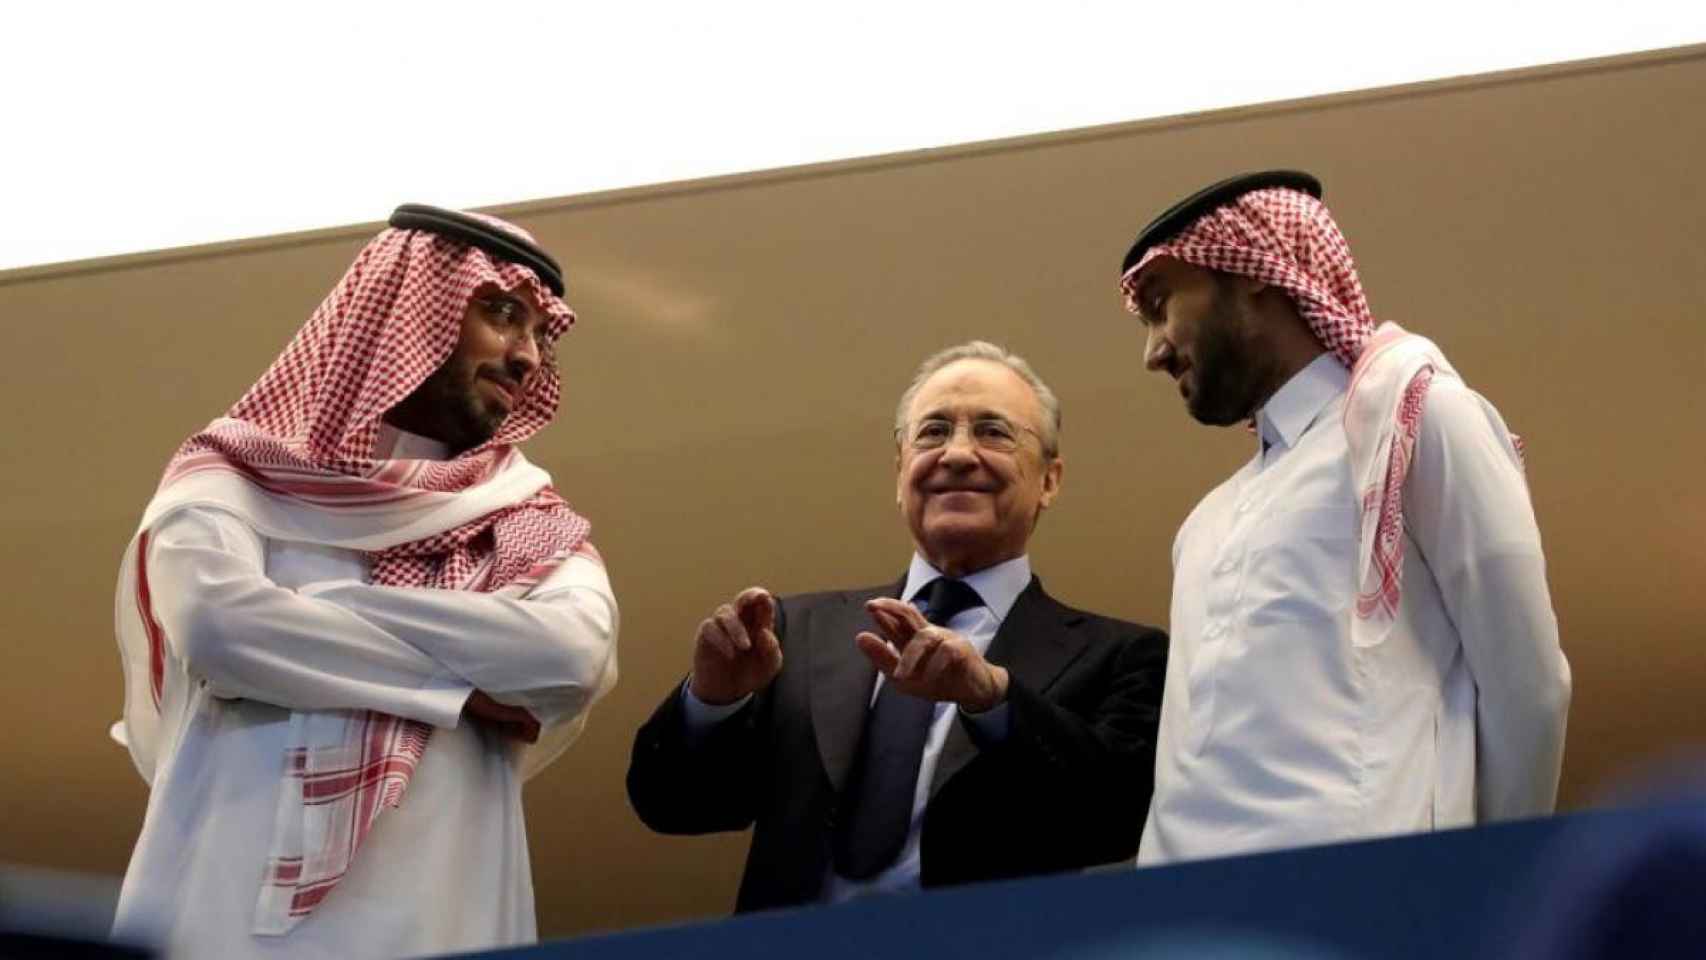 Florentino Pérez cruza los dedos entre dos jeques árabes | EFE